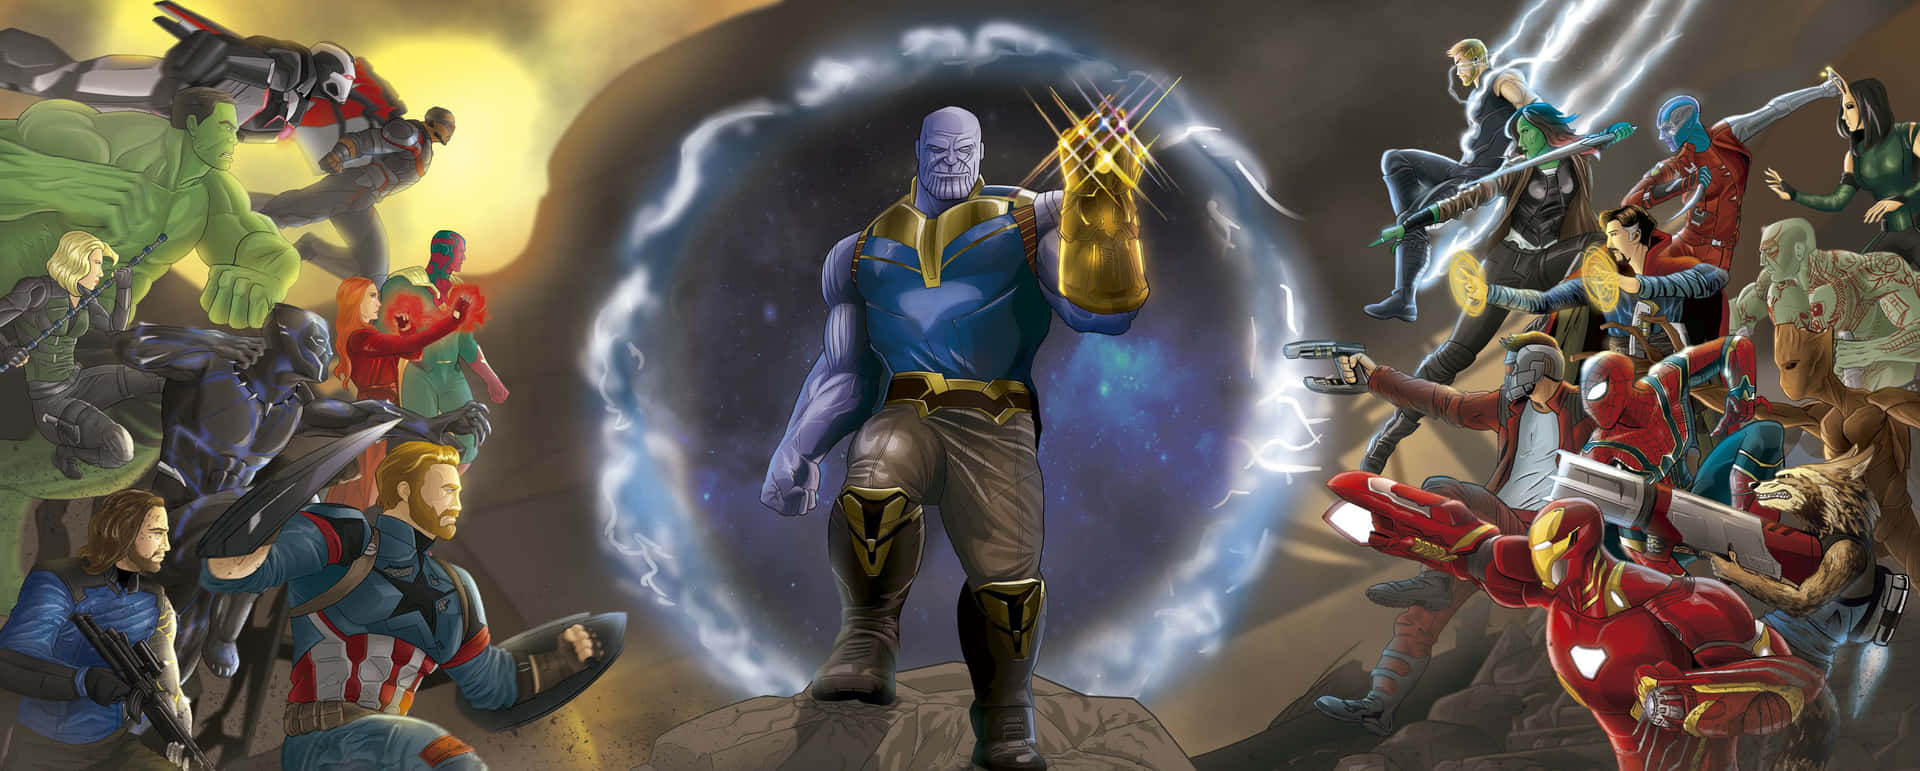 Animazioneimpressionante Di Thanos Degli Avengers Con Il Guanto Dell'infinito. Sfondo